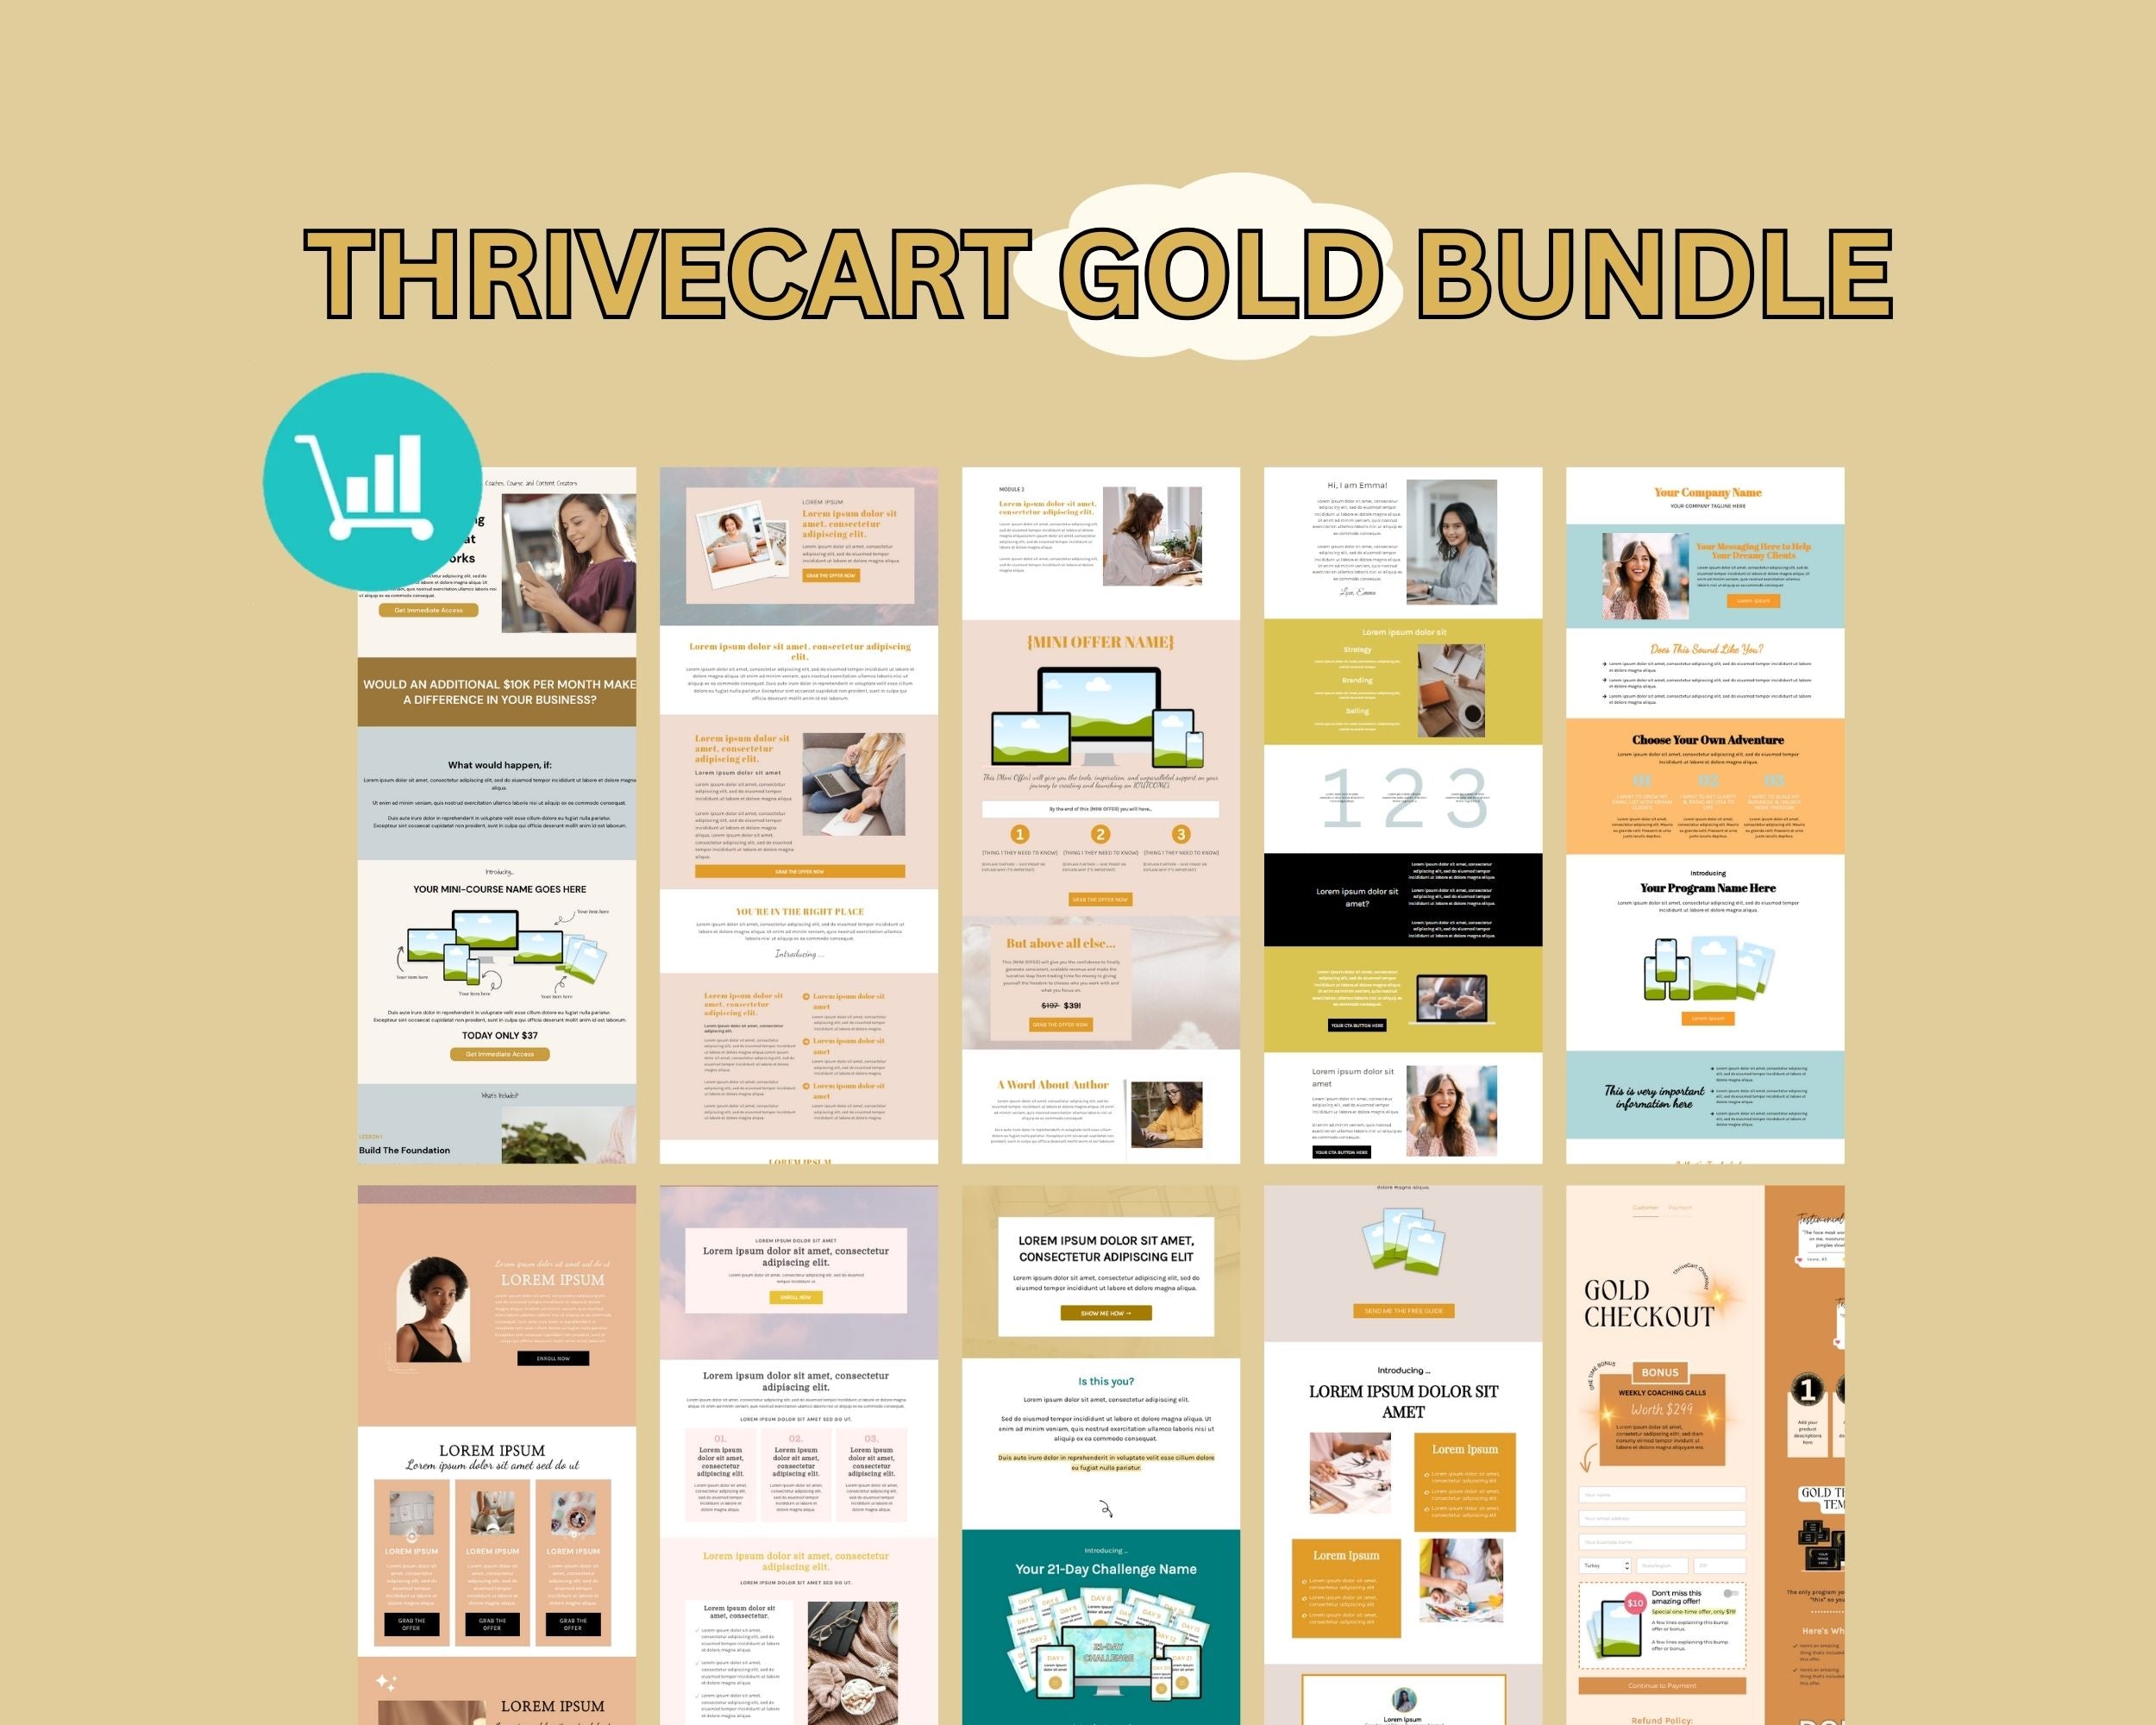 ThriveCart Gold Bundle Templates